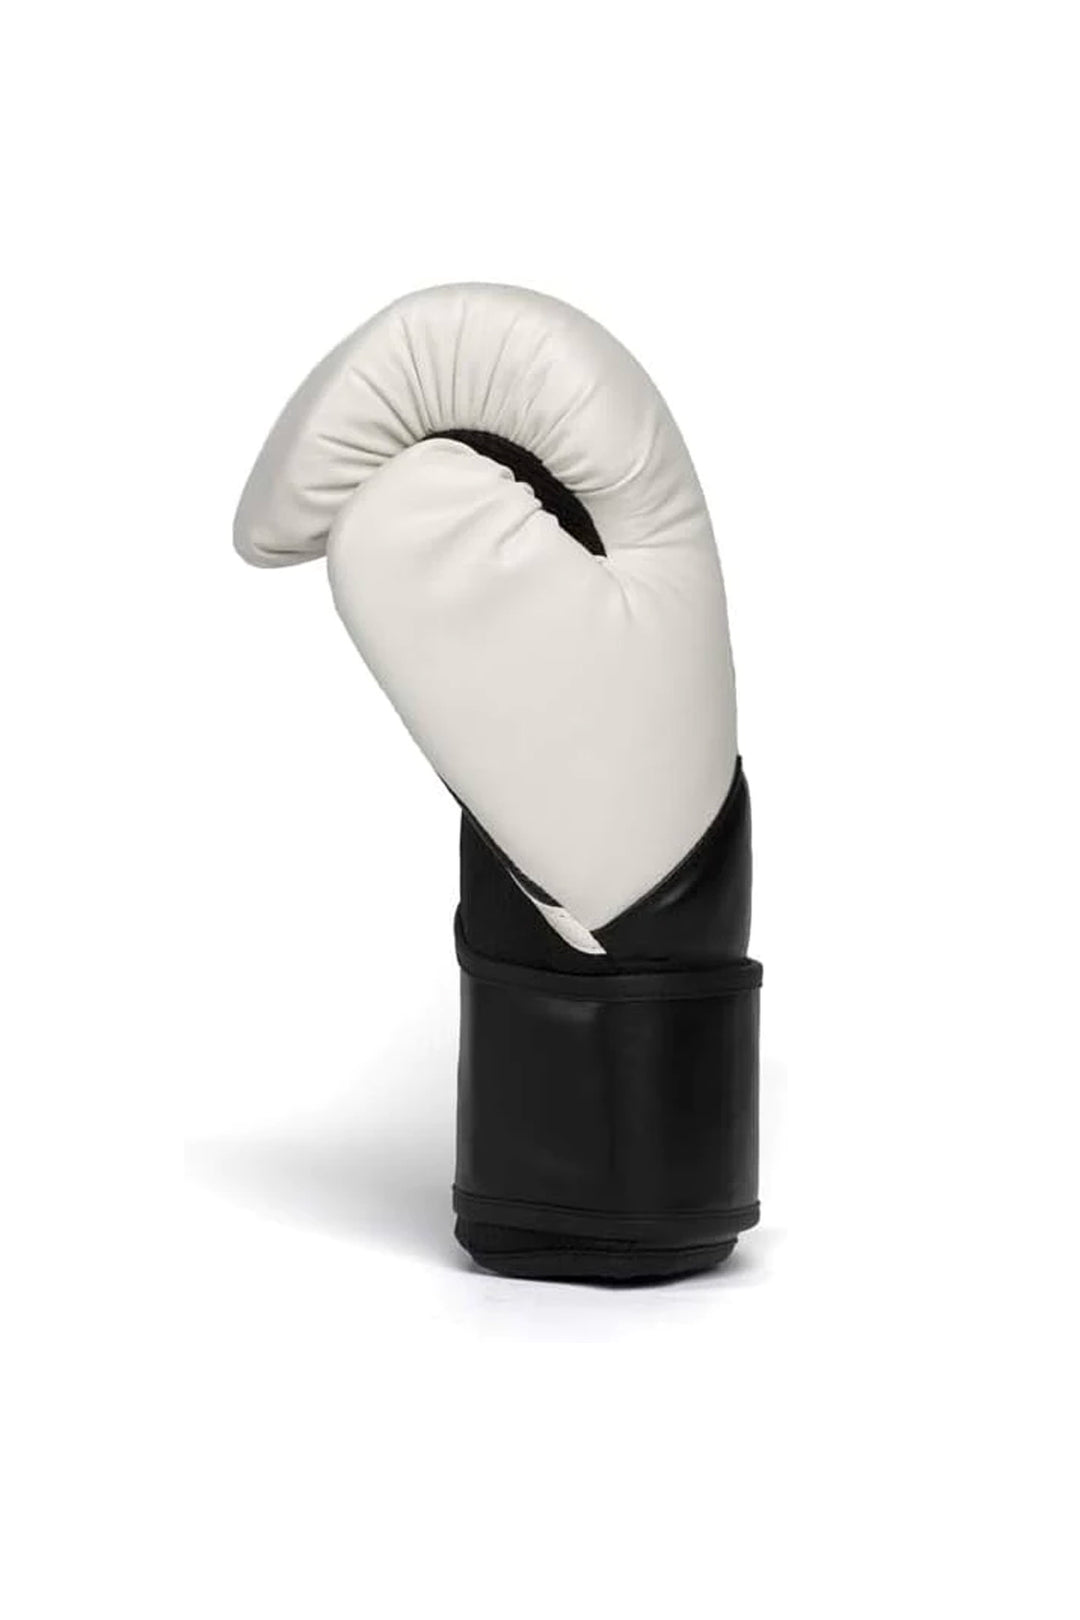 Everlast Elite2 Boxing Gloves